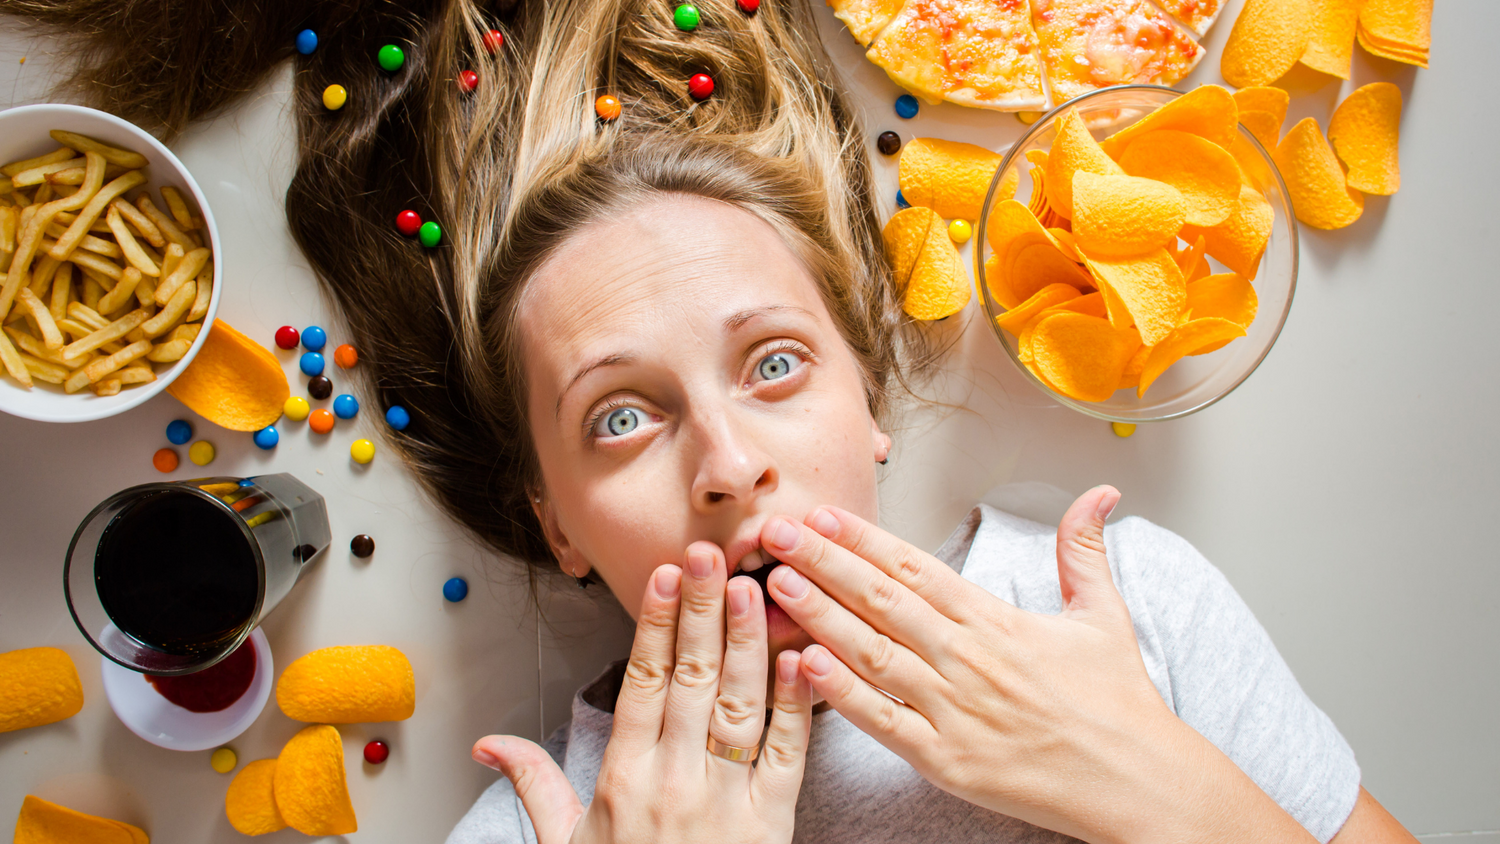 Femme blonde allongée au milieu de nourriture grasse et peu saine (chips, frites, pizza)les mains sur la bouche pour dire oups